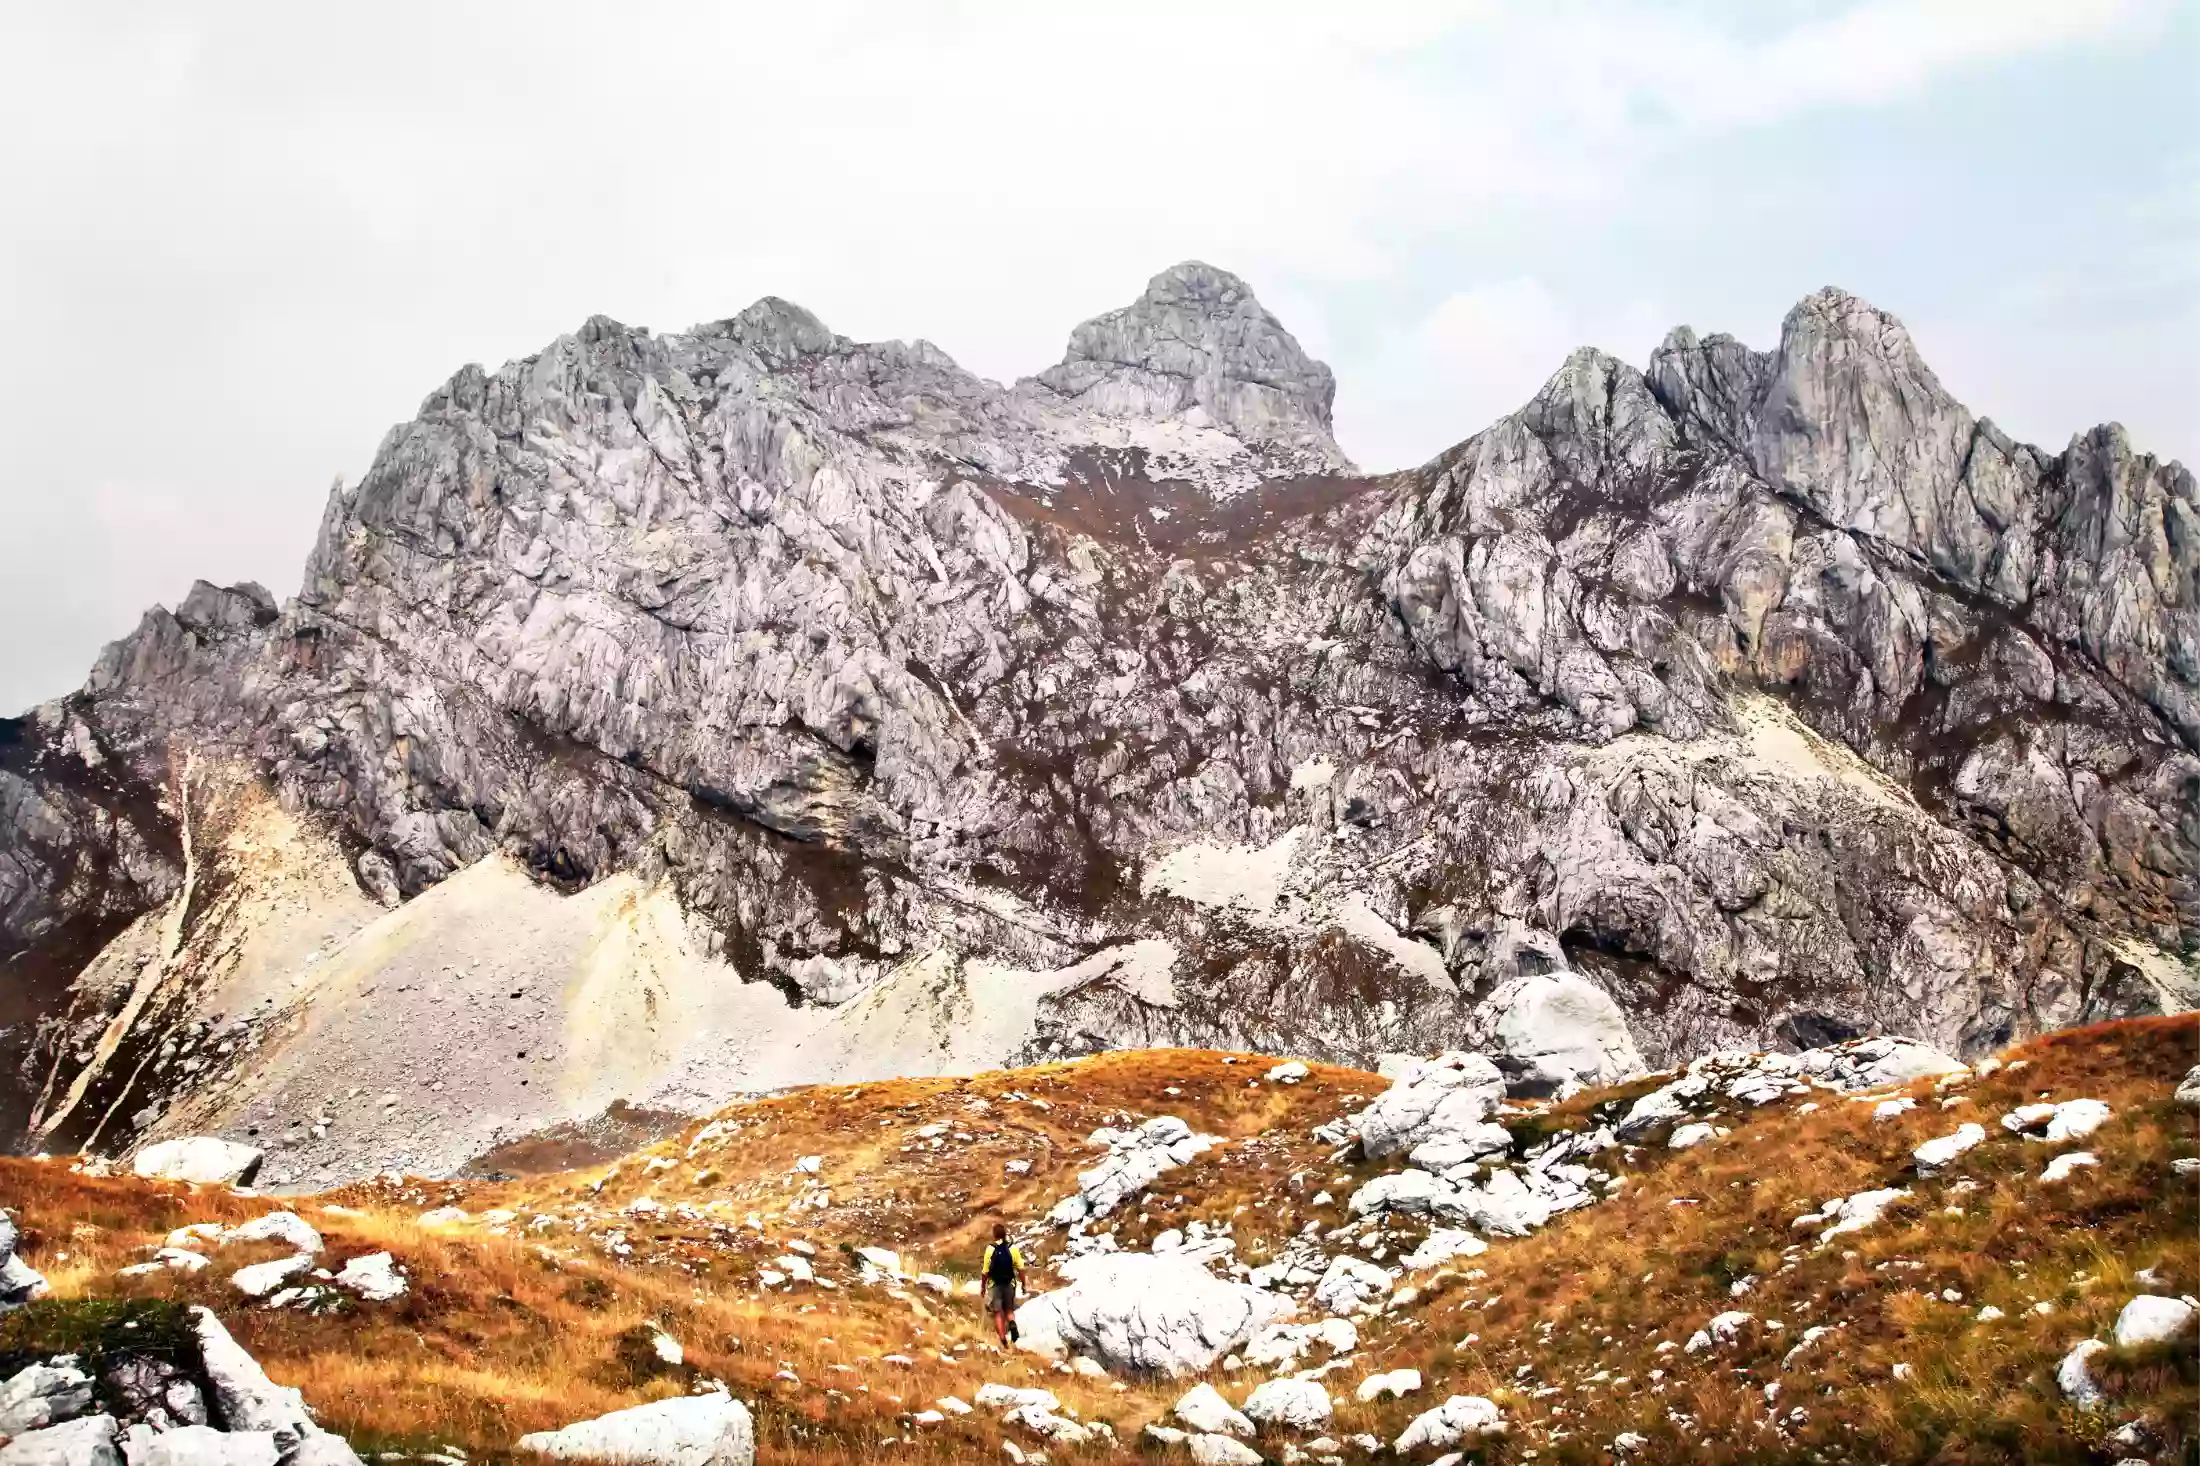 The highest peak in Montenegro